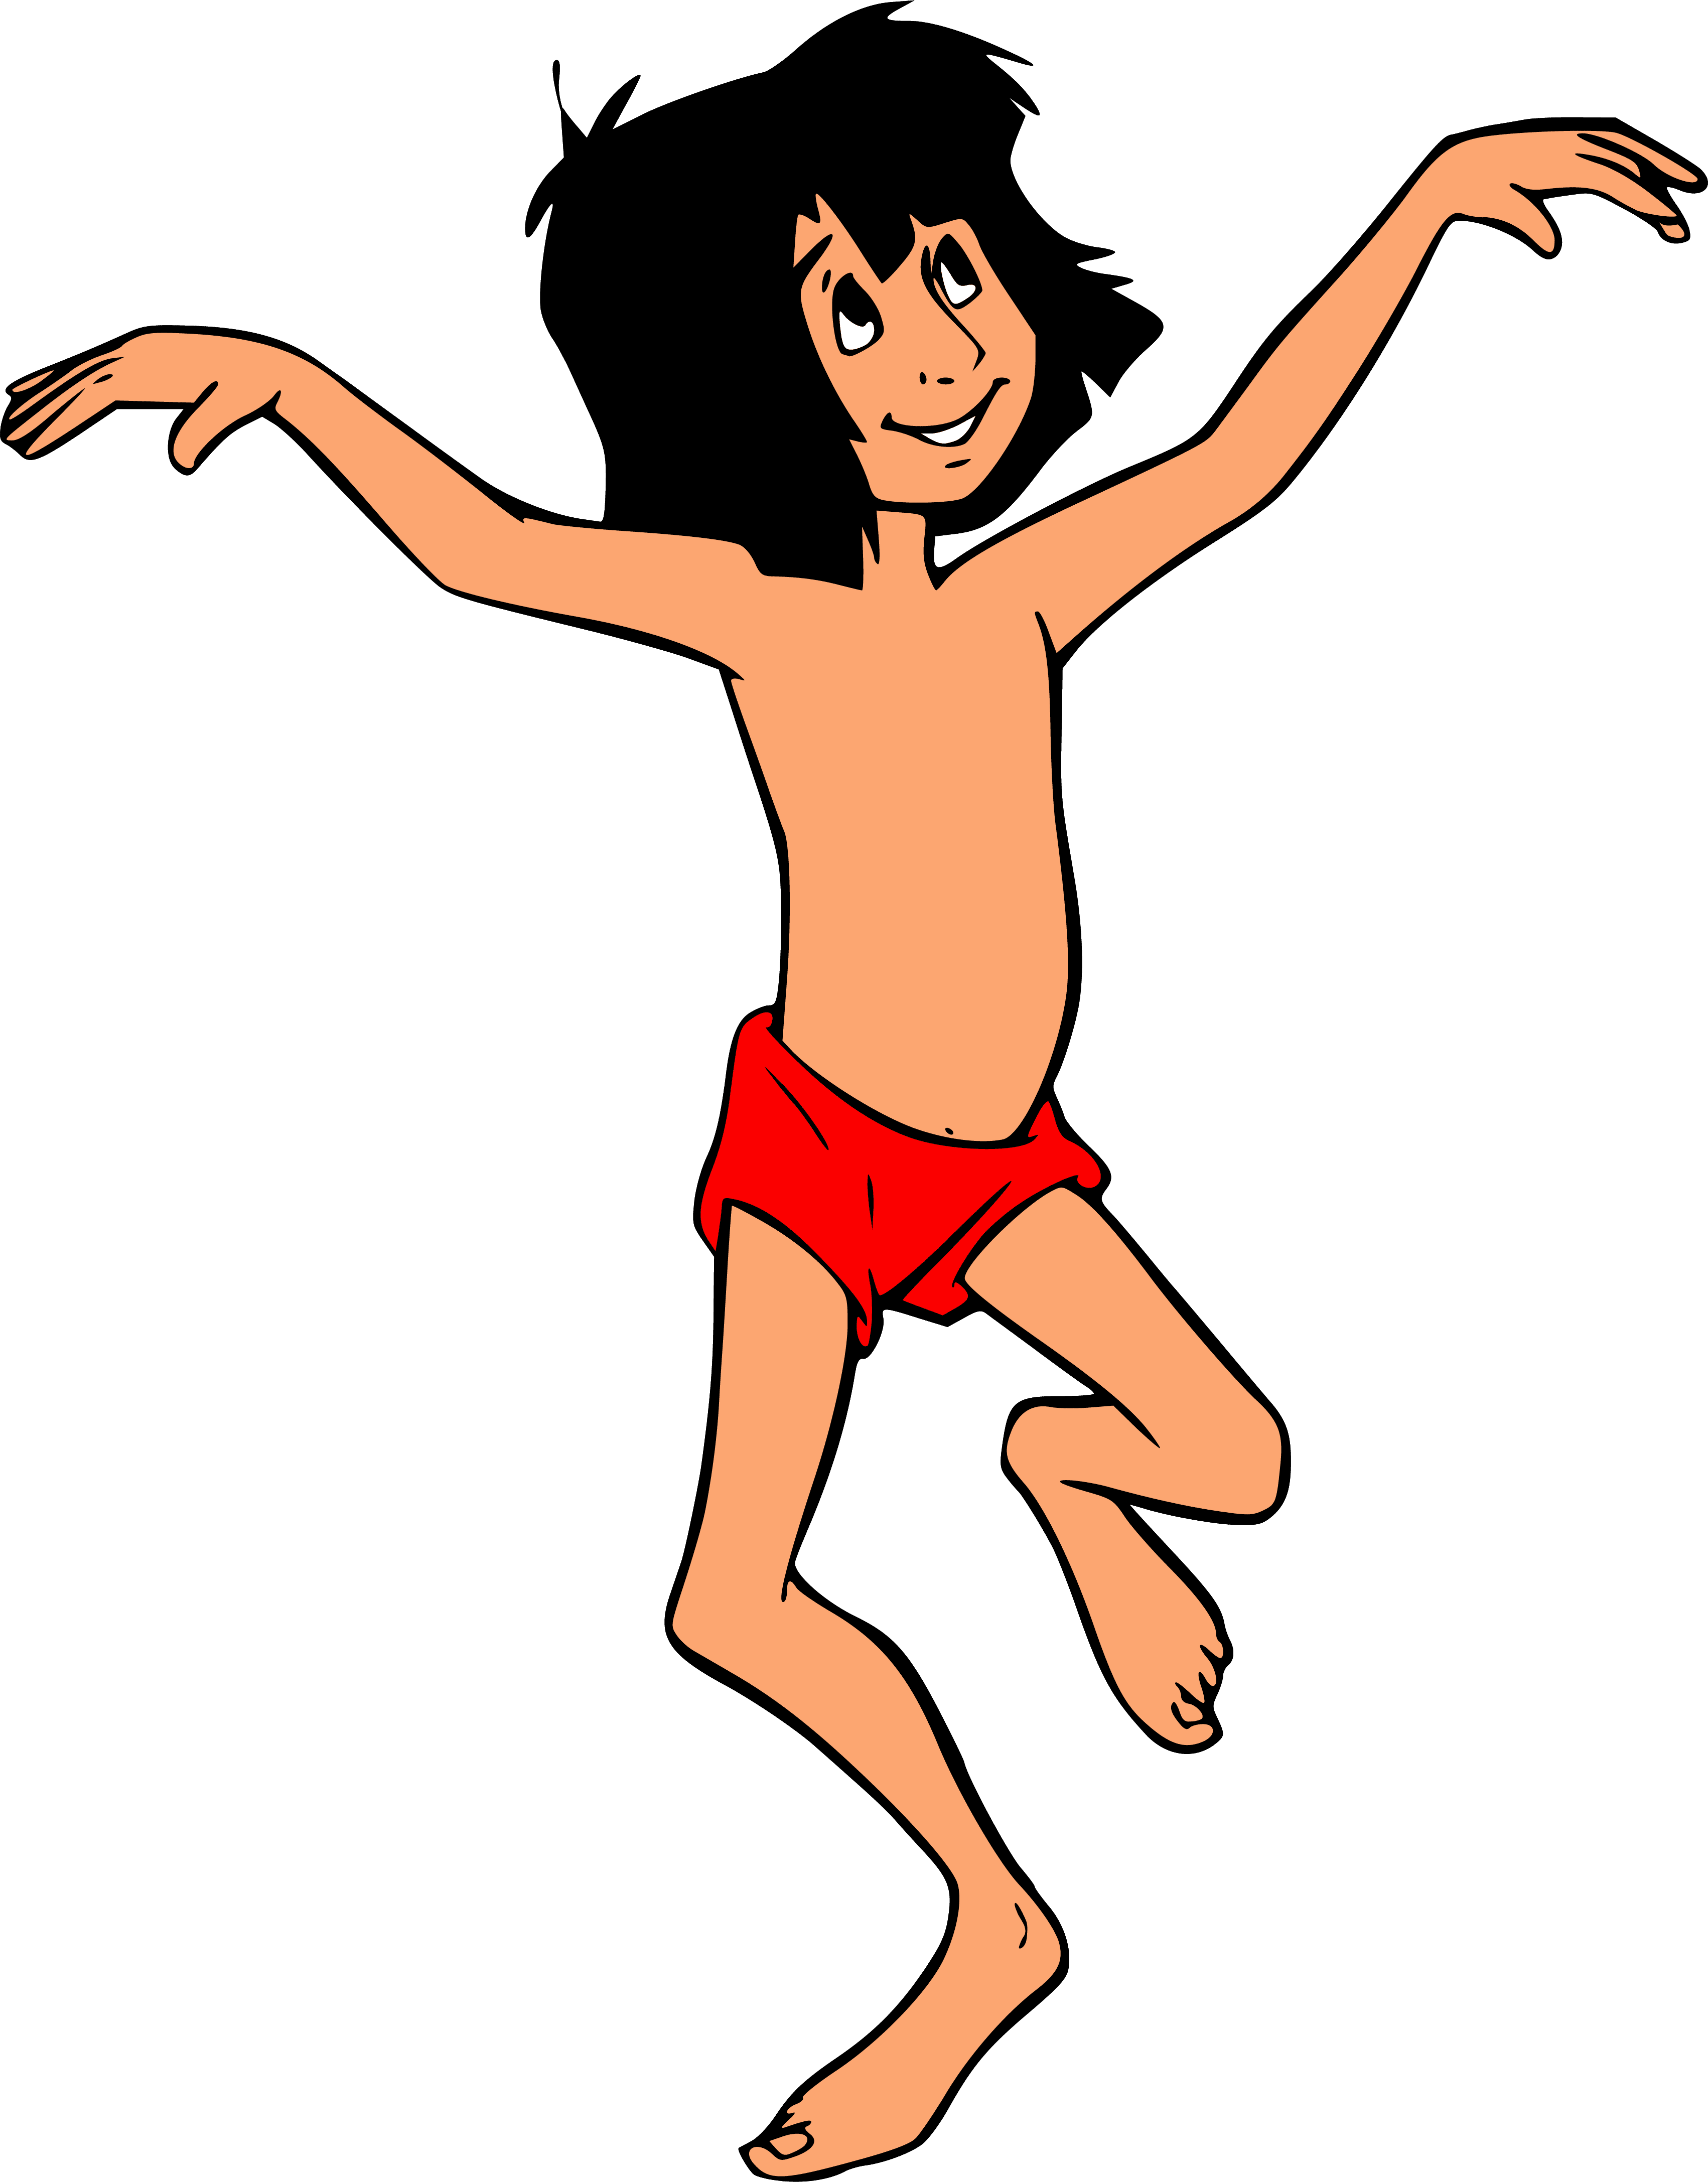 The Jungle Book Mowgli - Image to u